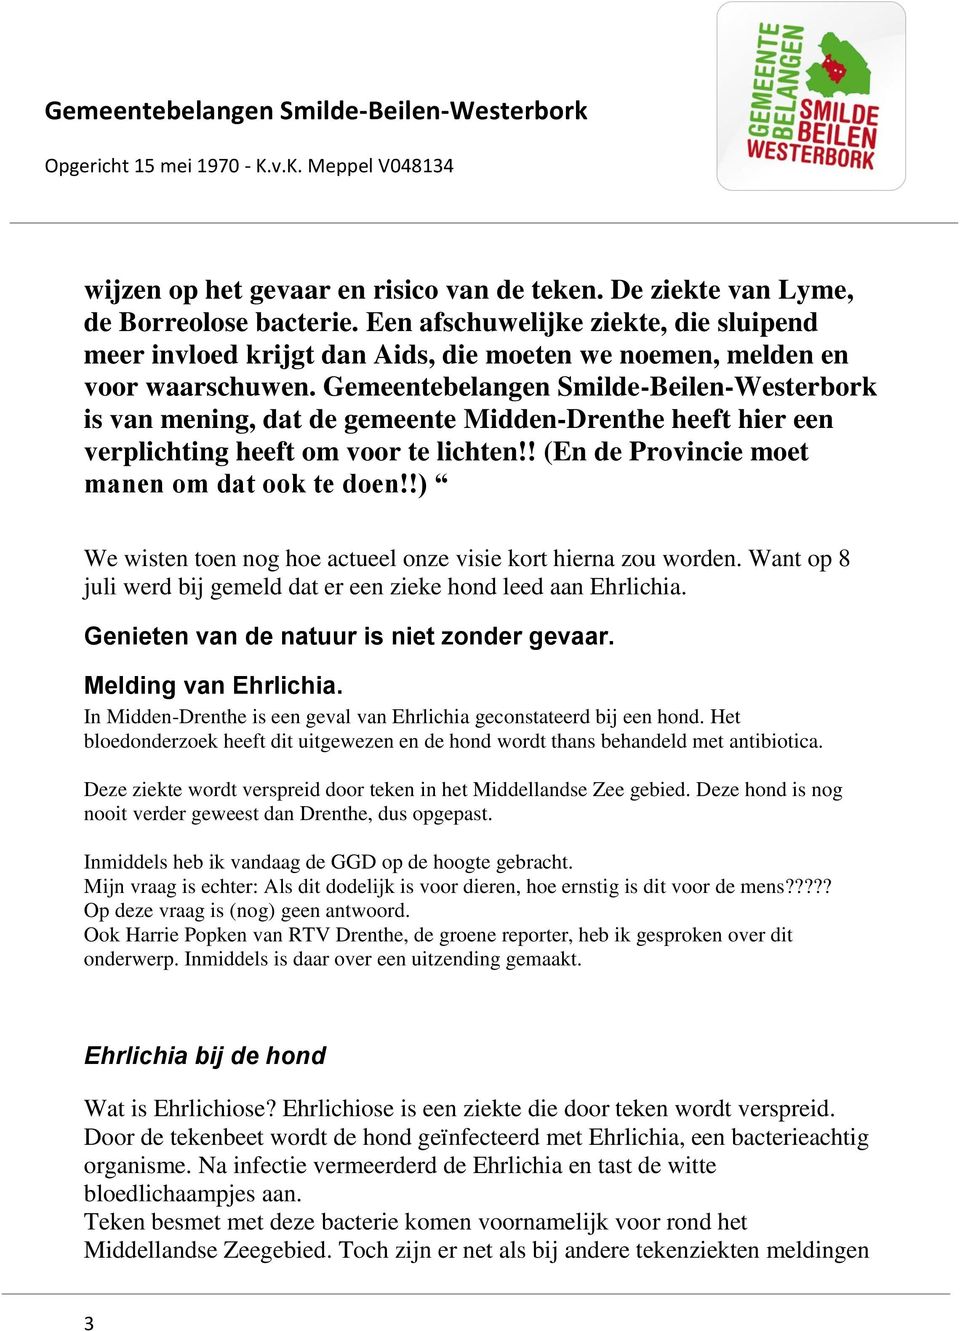 Gemeentebelangen Smilde-Beilen-Westerbork is van mening, dat de gemeente Midden-Drenthe heeft hier een verplichting heeft om voor te lichten!! (En de Provincie moet manen om dat ook te doen!